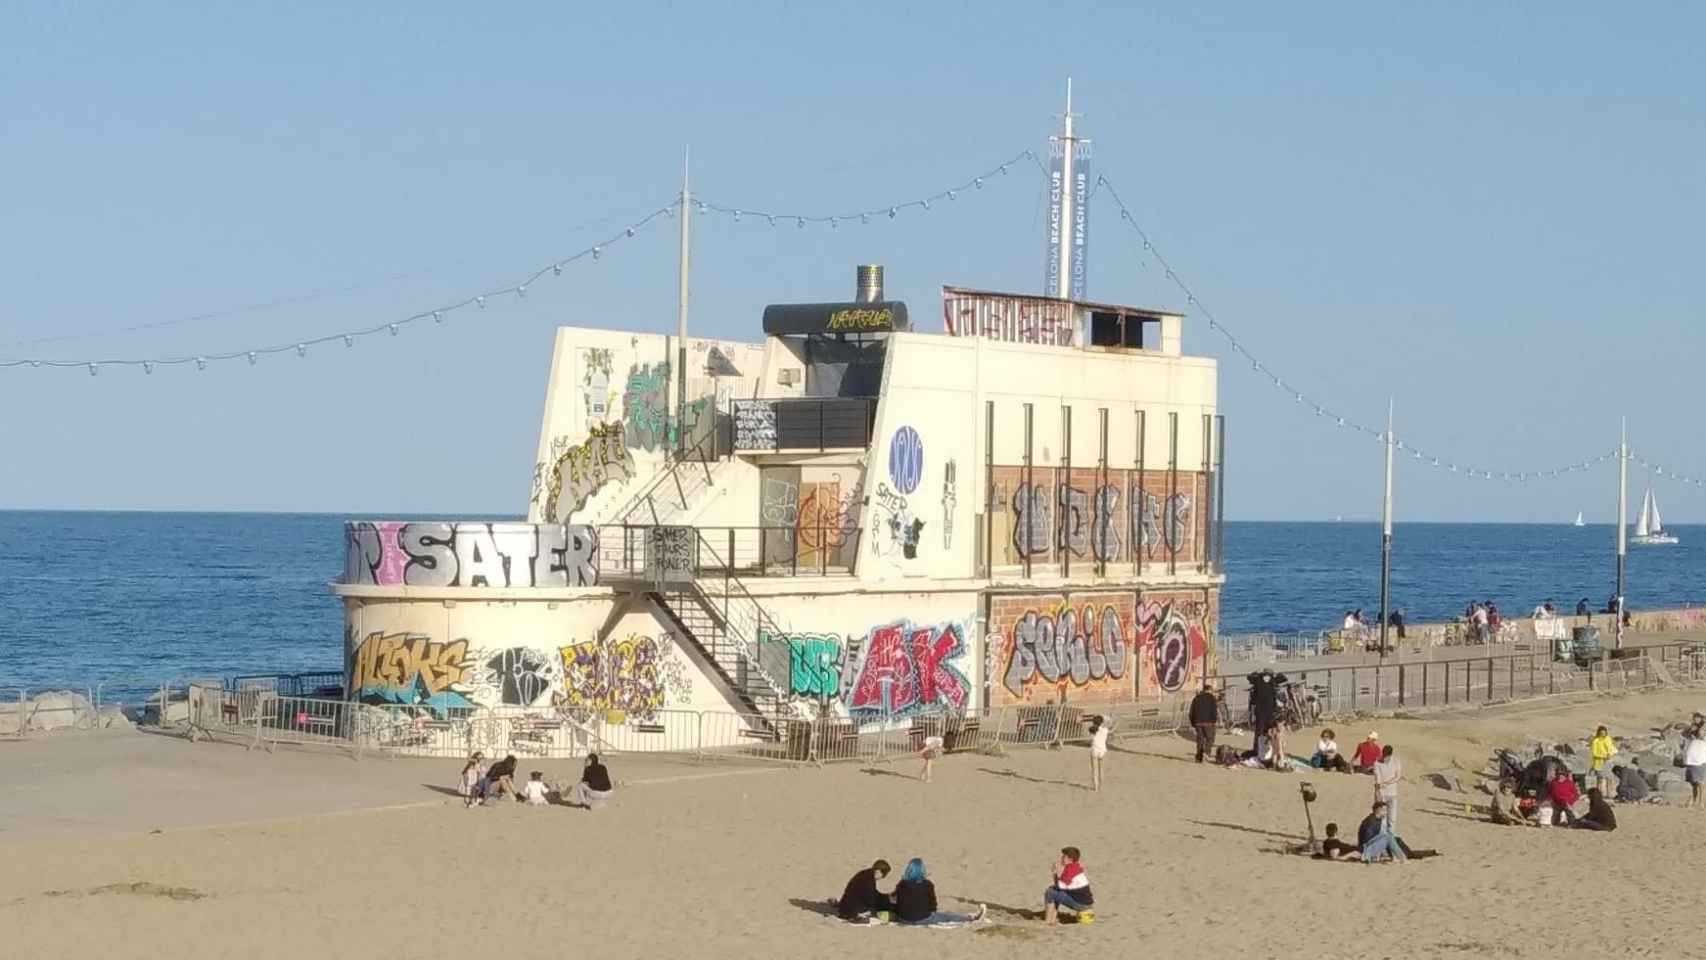 El restaurante Barcelona Beach Club, tapiado y abandonado / MA